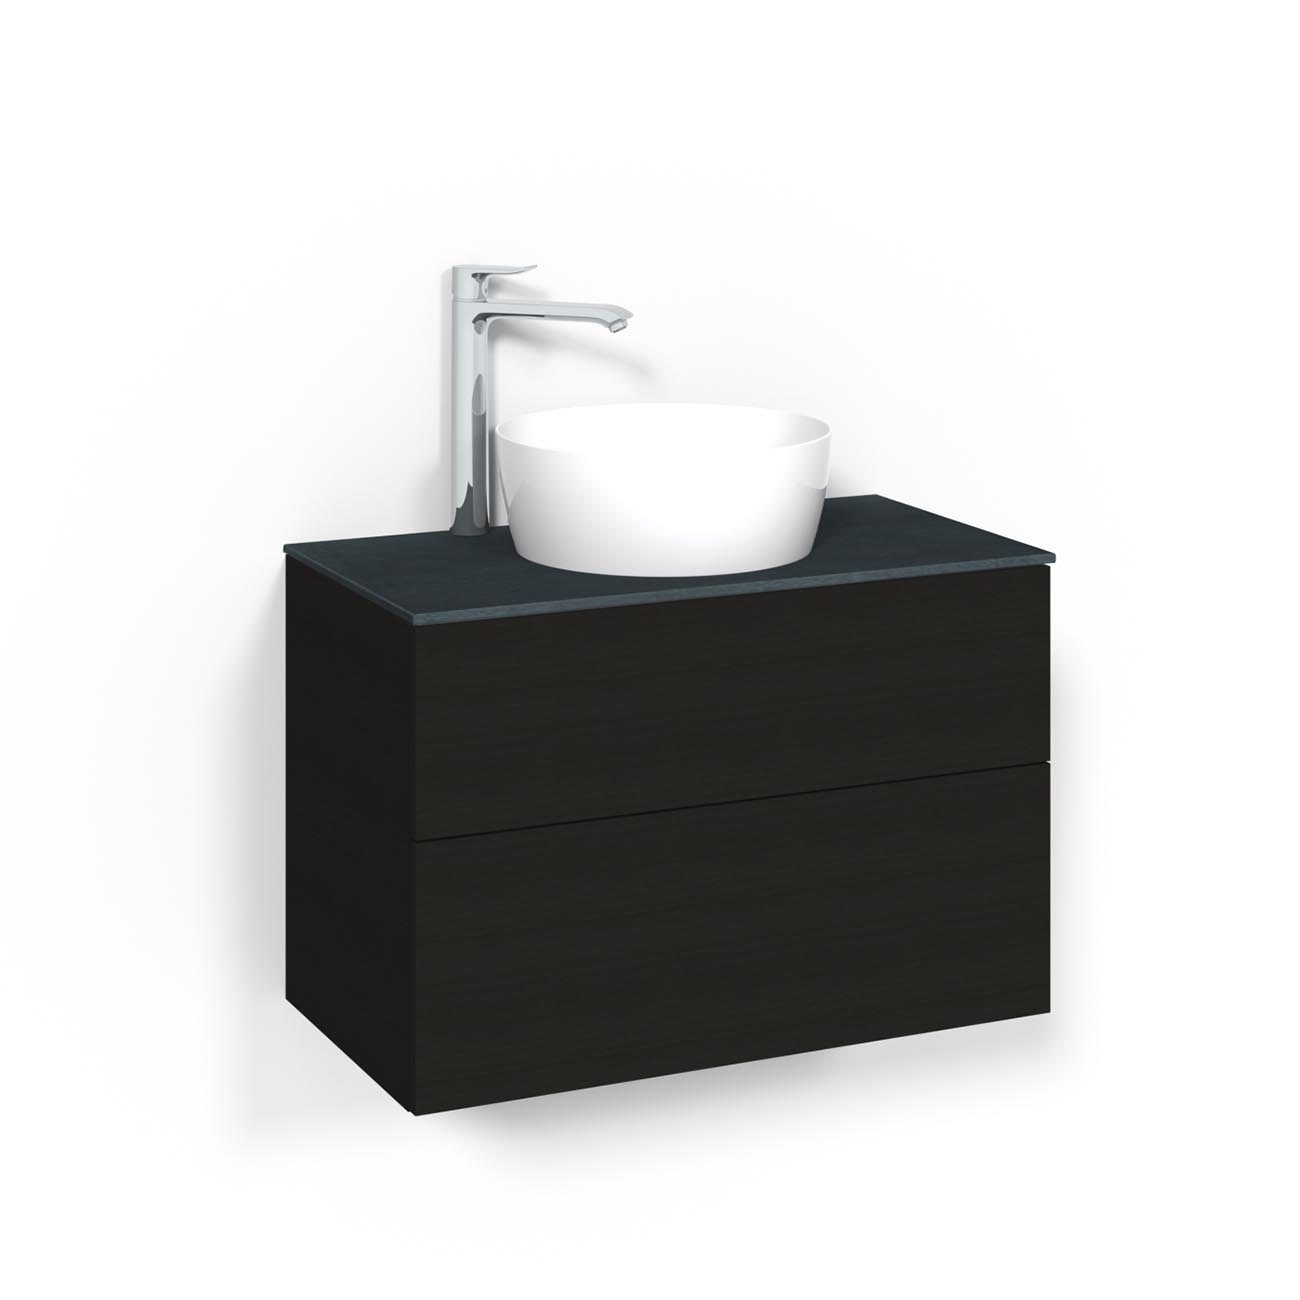 Tvättställsskåp Macro Design Crown Plain Ovanpåliggande Tvättställ